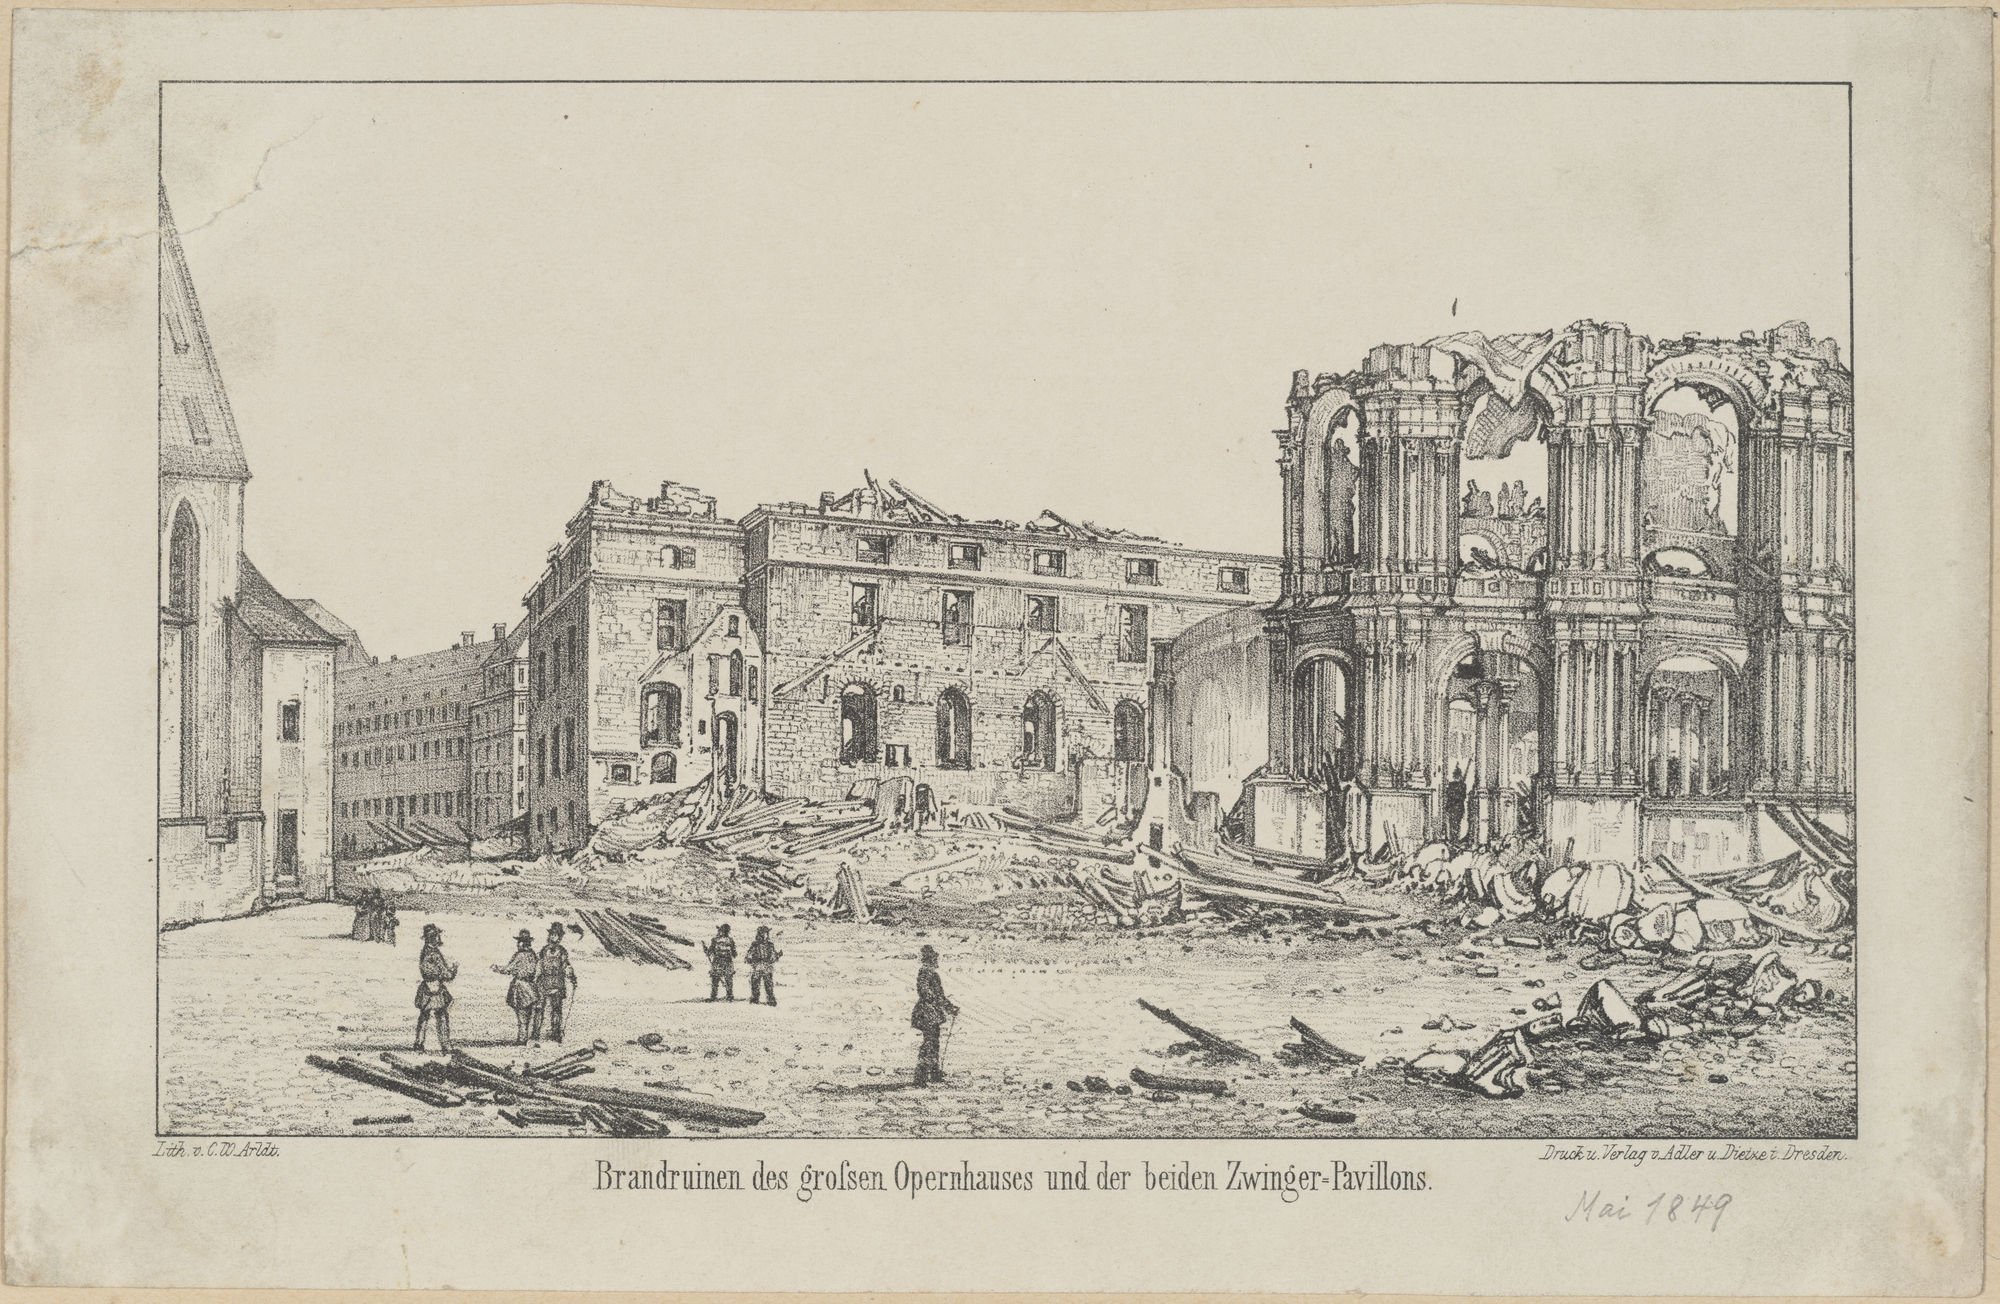 Brandruinen des grossen Opernhauses und der beiden Zwinger=Pavillons. (Kulturstiftung Sachsen-Anhalt Public Domain Mark)